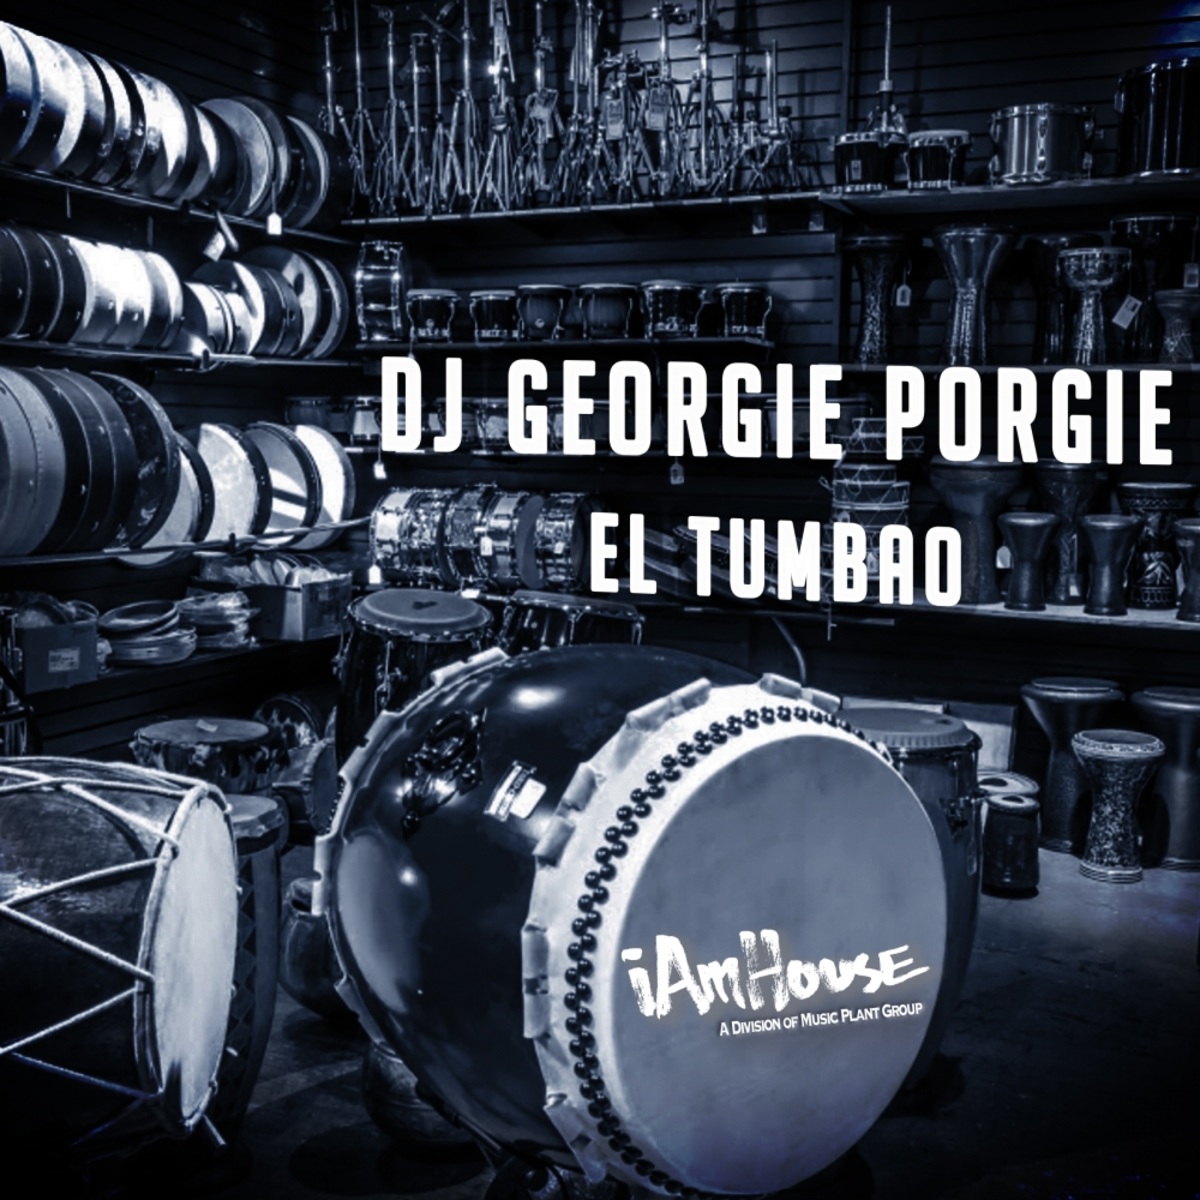 DJ Georgie Porgie - El Tumbao / I Am House (Music Plant Group)